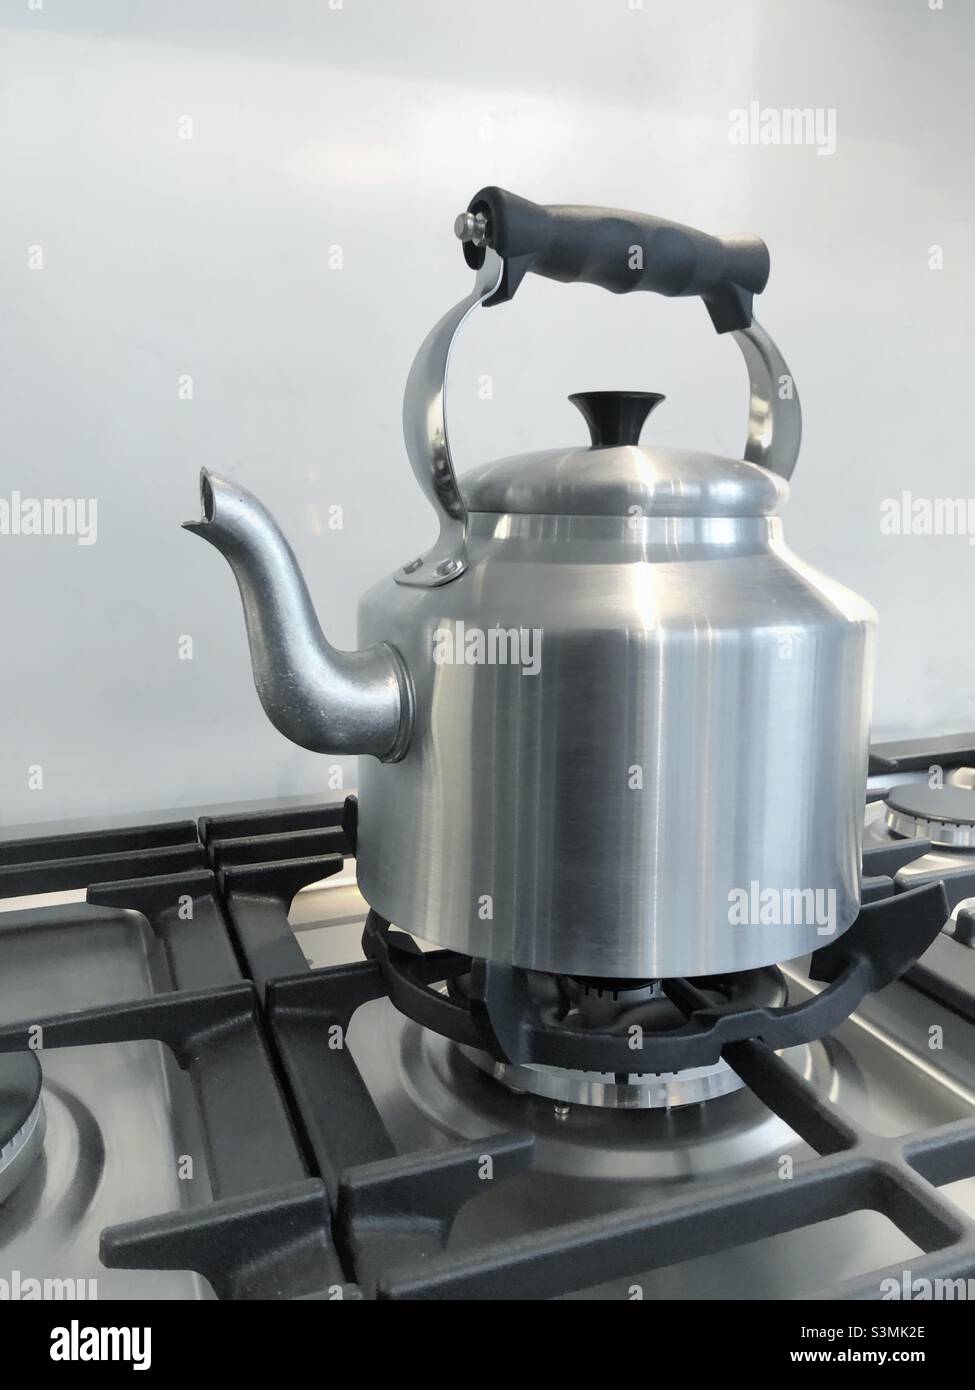 Er große silberne altmodische Wasserkocher mit Griff und Auslauf auf einem Gasherd kochendes Wasser für heiße Getränke Stockfoto